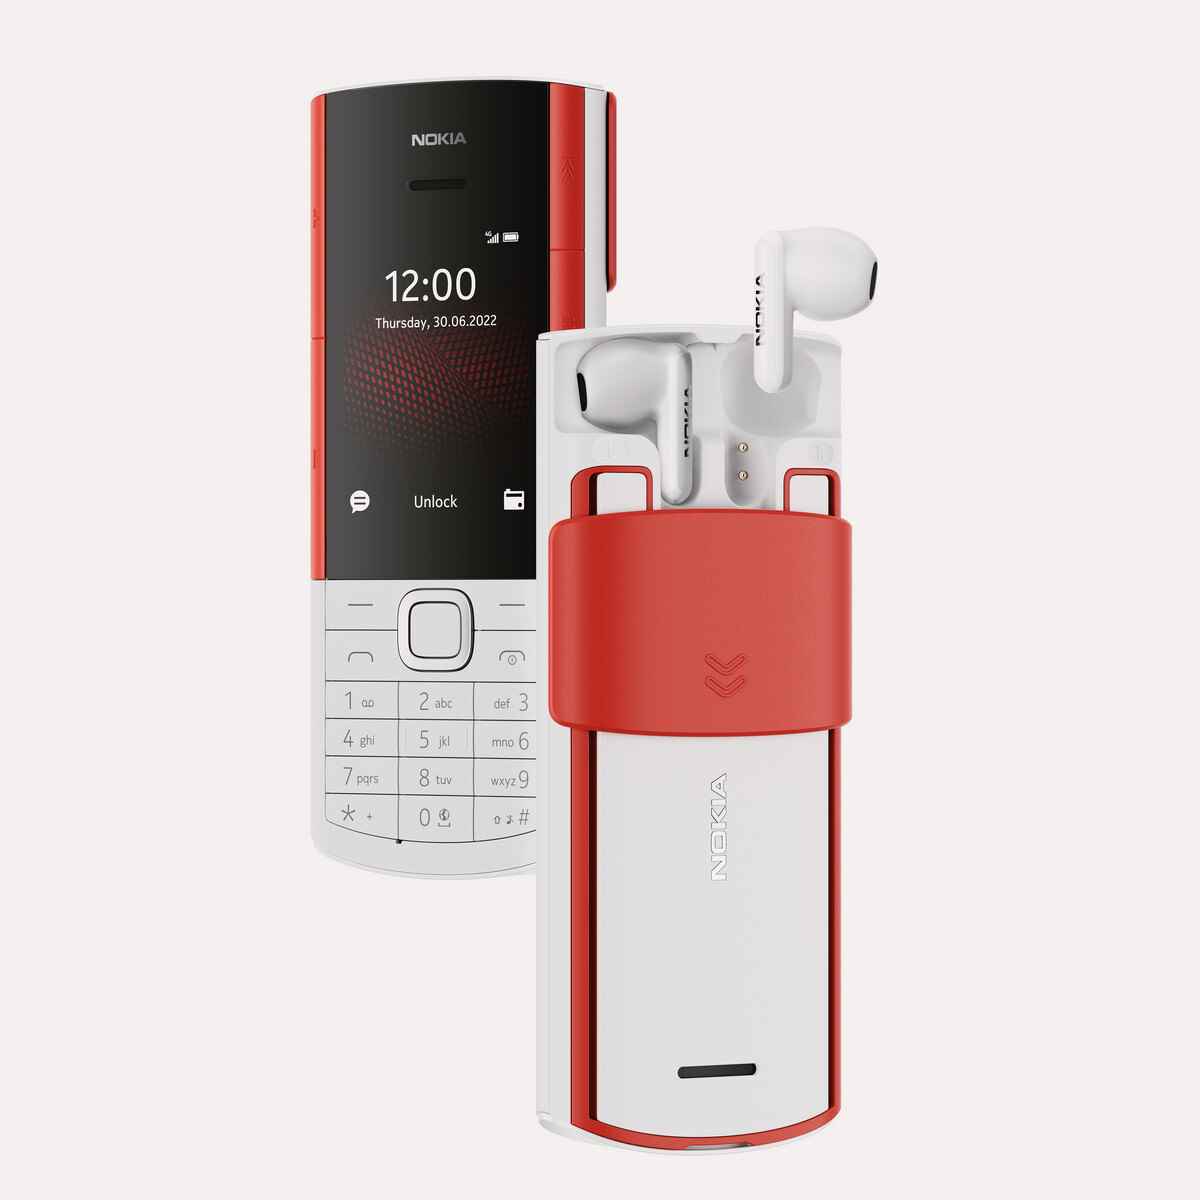 Nokia 5710 XpressAudio - Nokia, retro cazibesini üç özellikli telefon ve Android tablet ile geri getiriyor